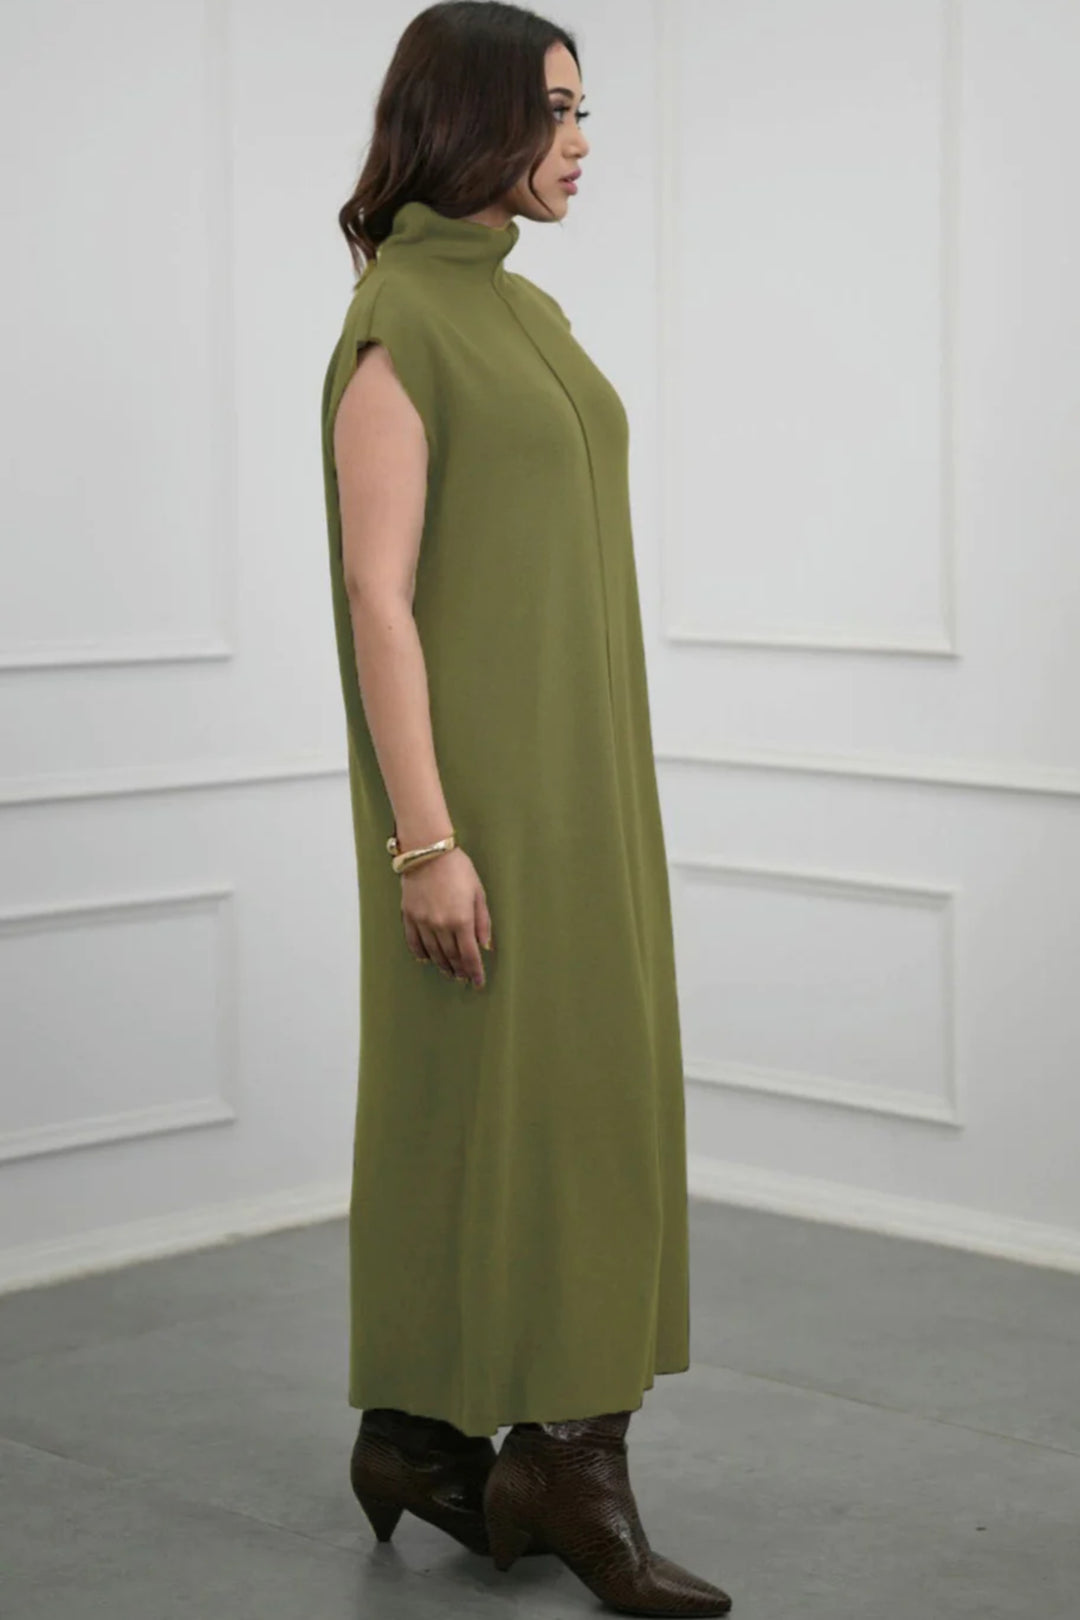 Green knitted woolen long dress for women